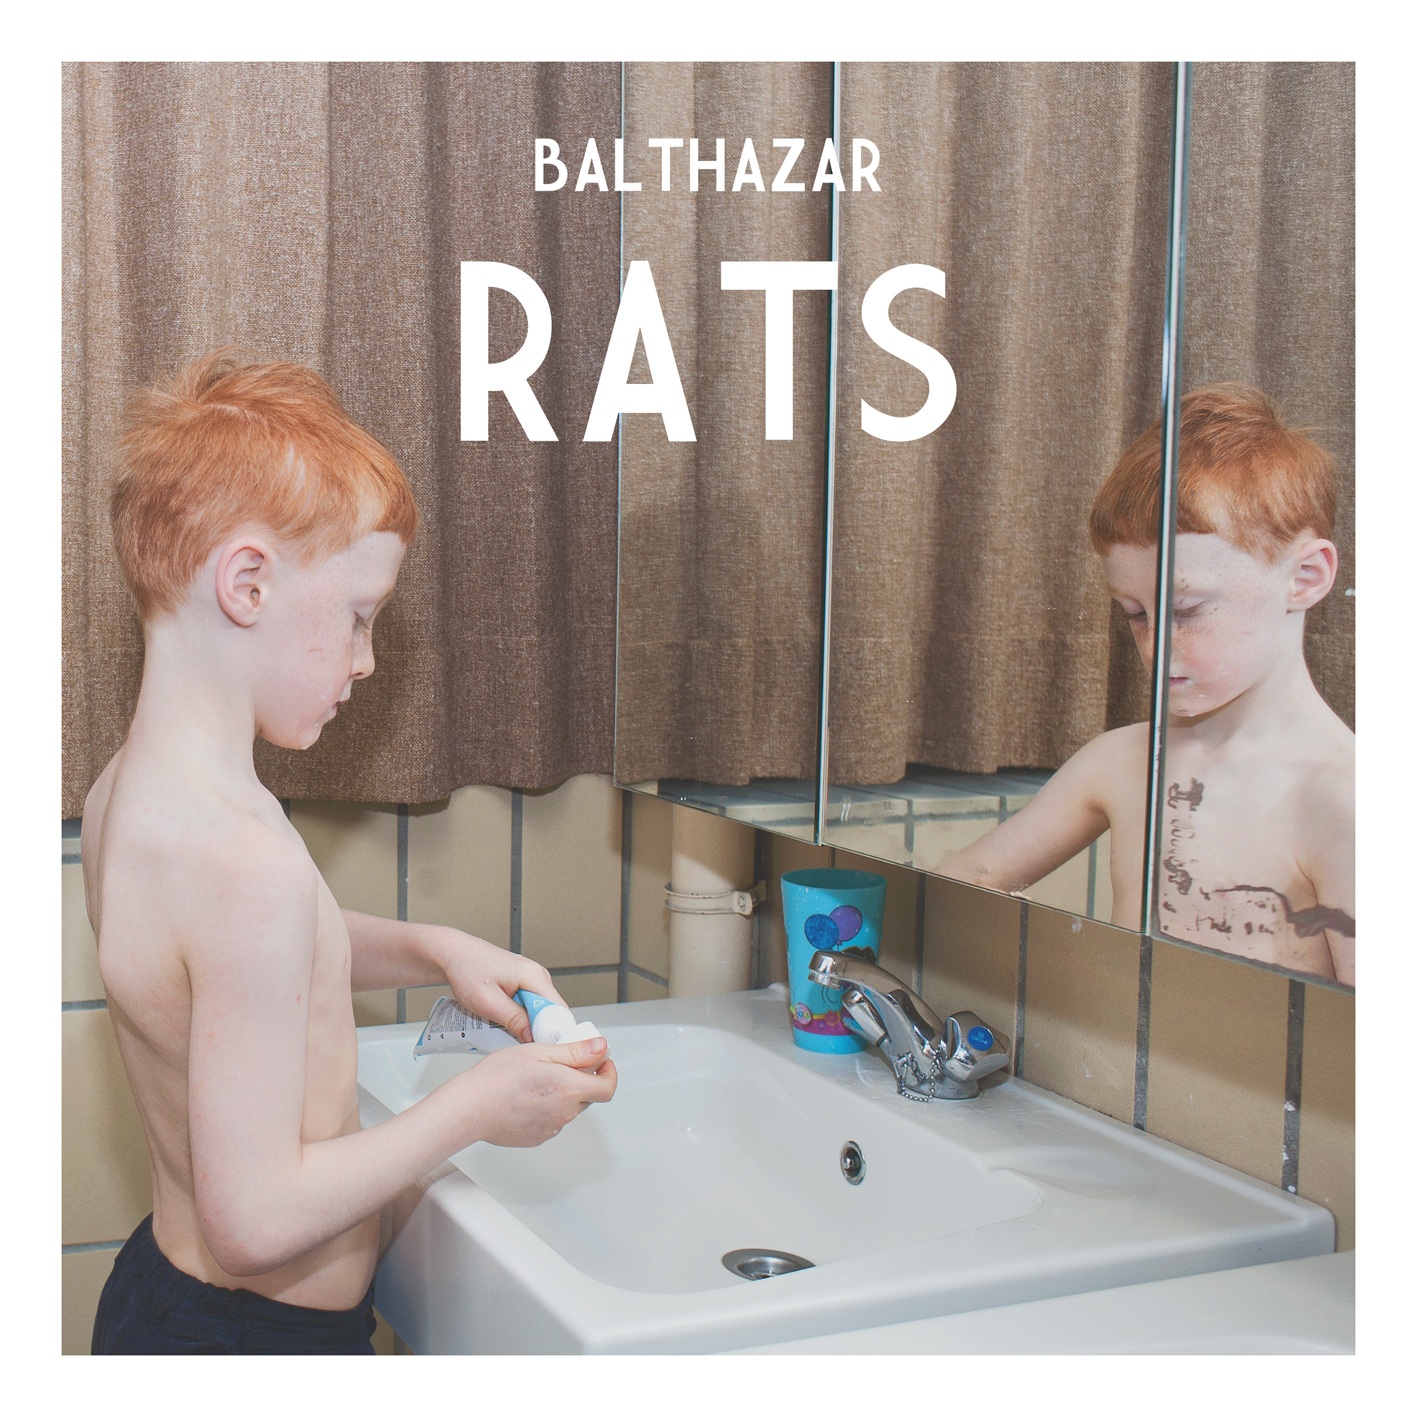 Balthazar-Rats-Packshot.jpg